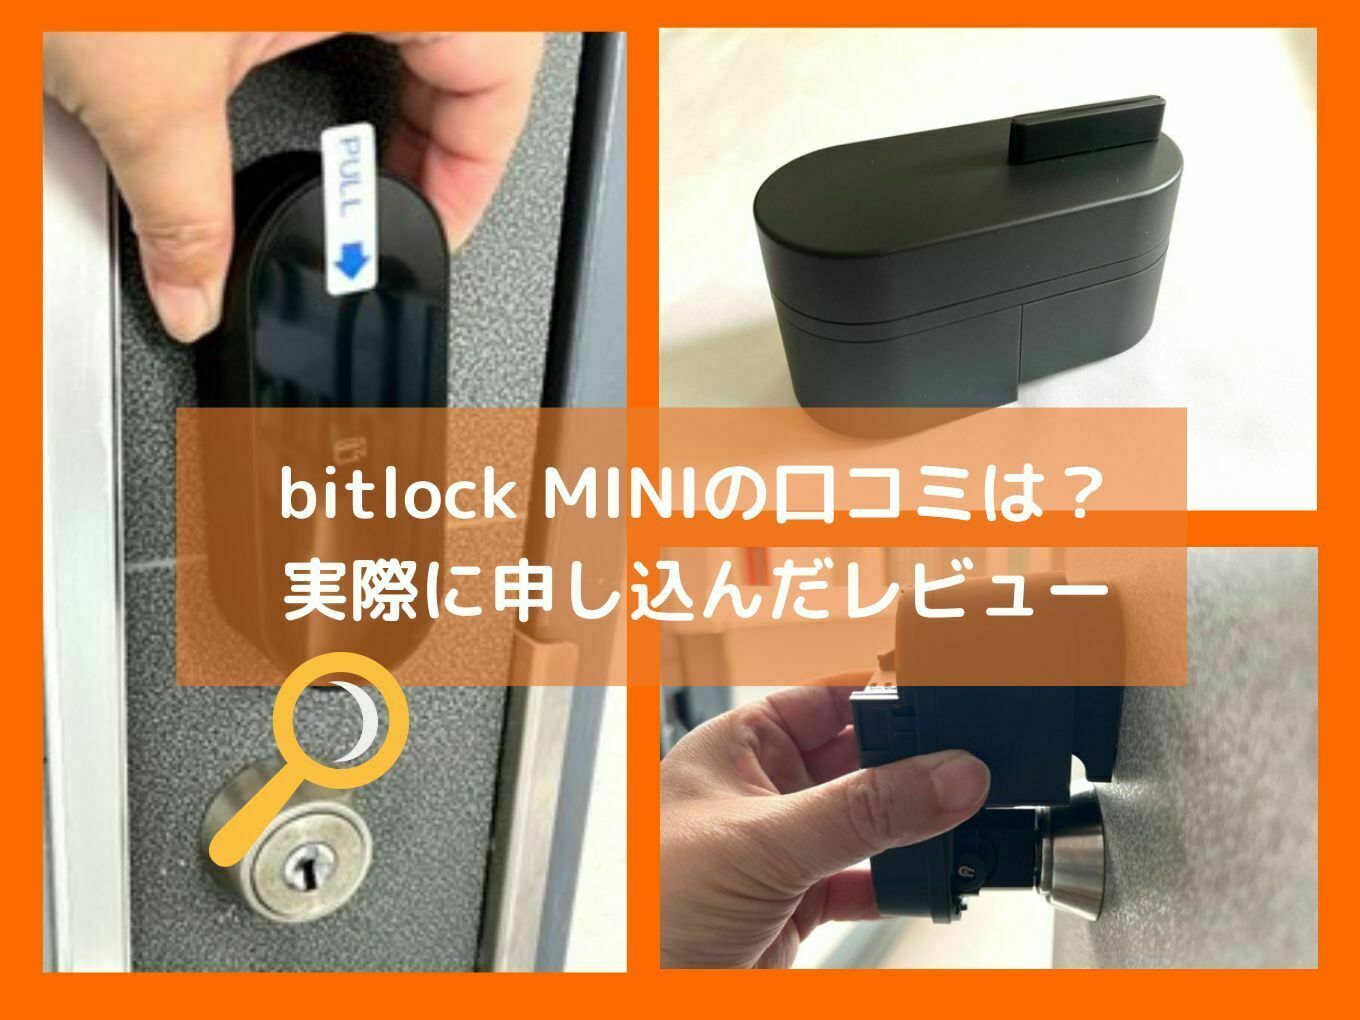 Bitlock MINI